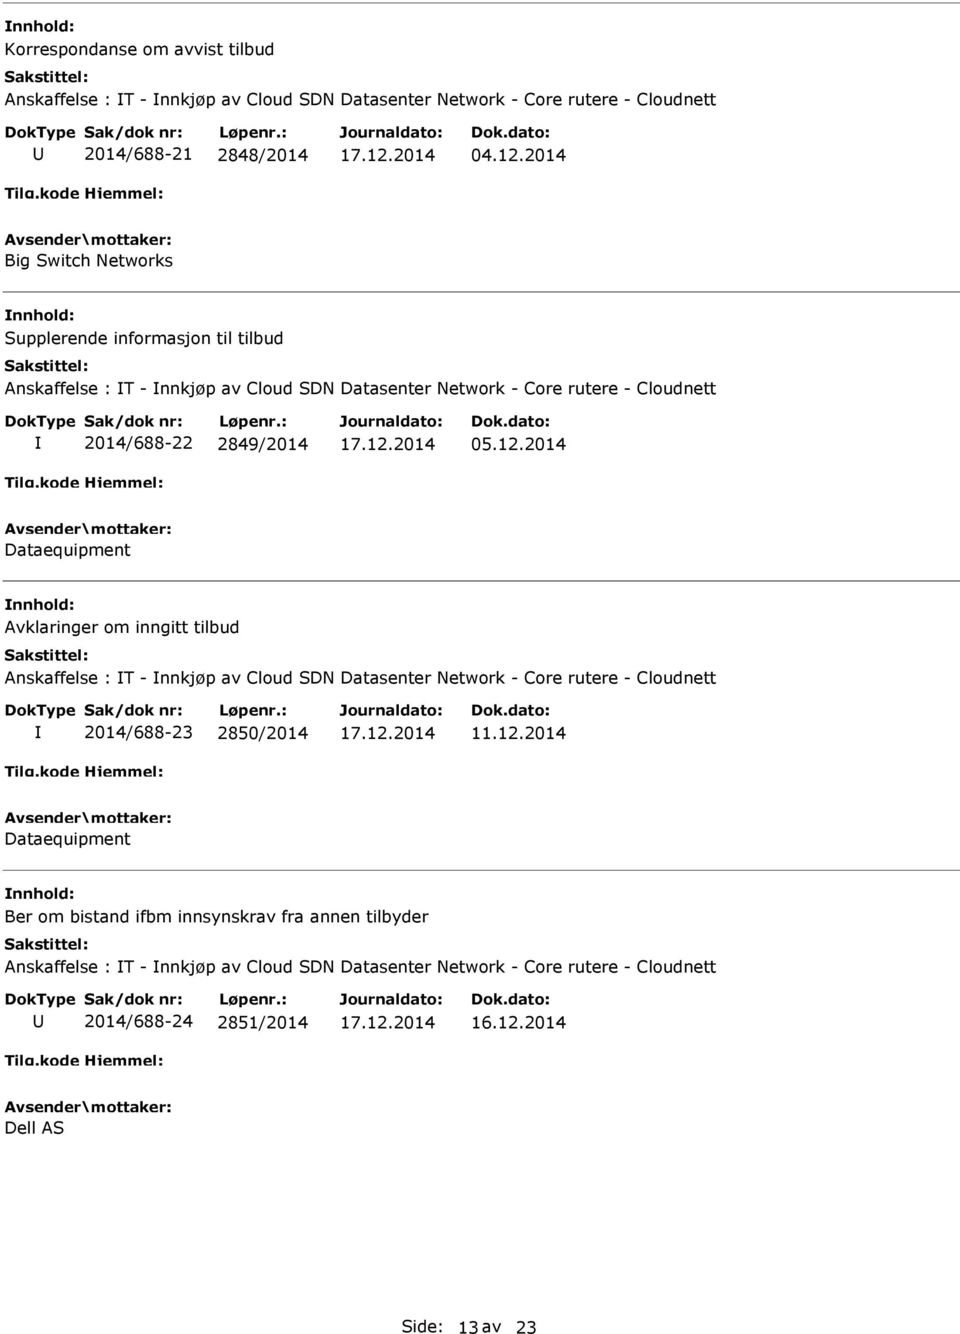 12.2014 Dataequipment Avklaringer om inngitt tilbud Anskaffelse : T - nnkjøp av Cloud SDN Datasenter Network - Core rutere - Cloudnett 2014/688-23 2850/2014 11.12.2014